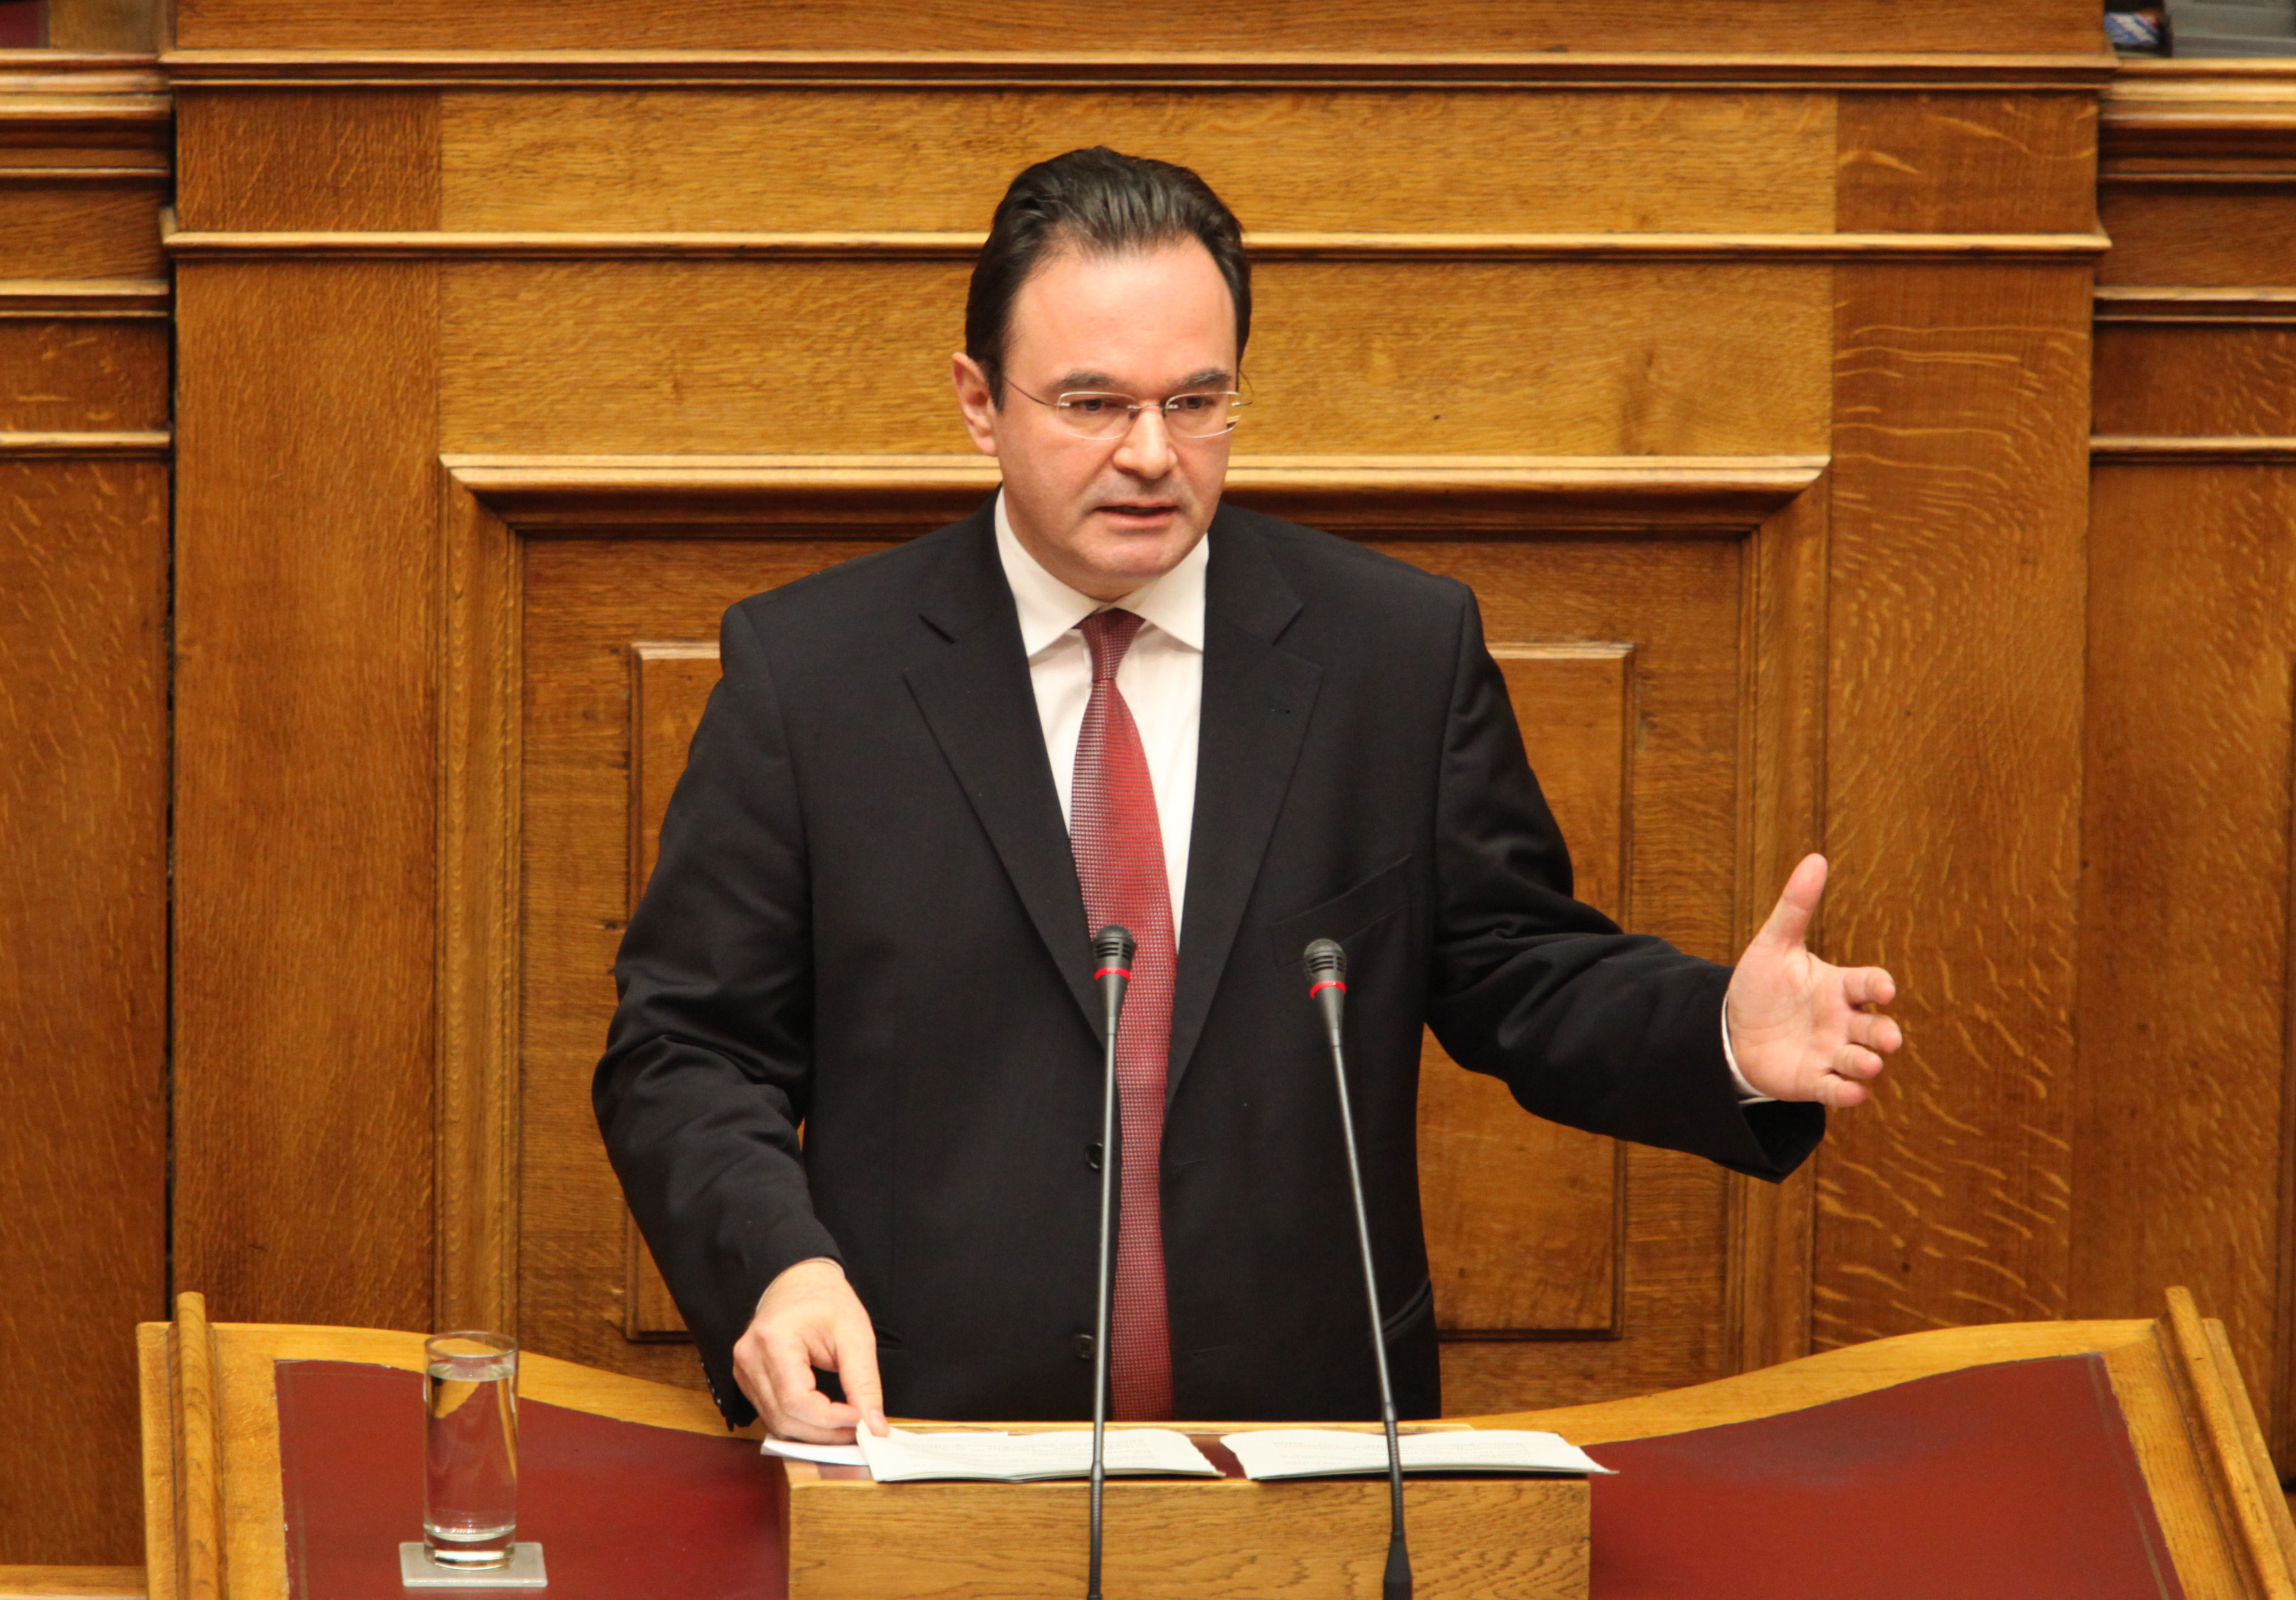 Γιώργος Παπακωνσταντίνου στην Βουλή: Υπήρξε αστοχία χειρισμών – Η ευθύνη βαρύνει μόνο εμένα